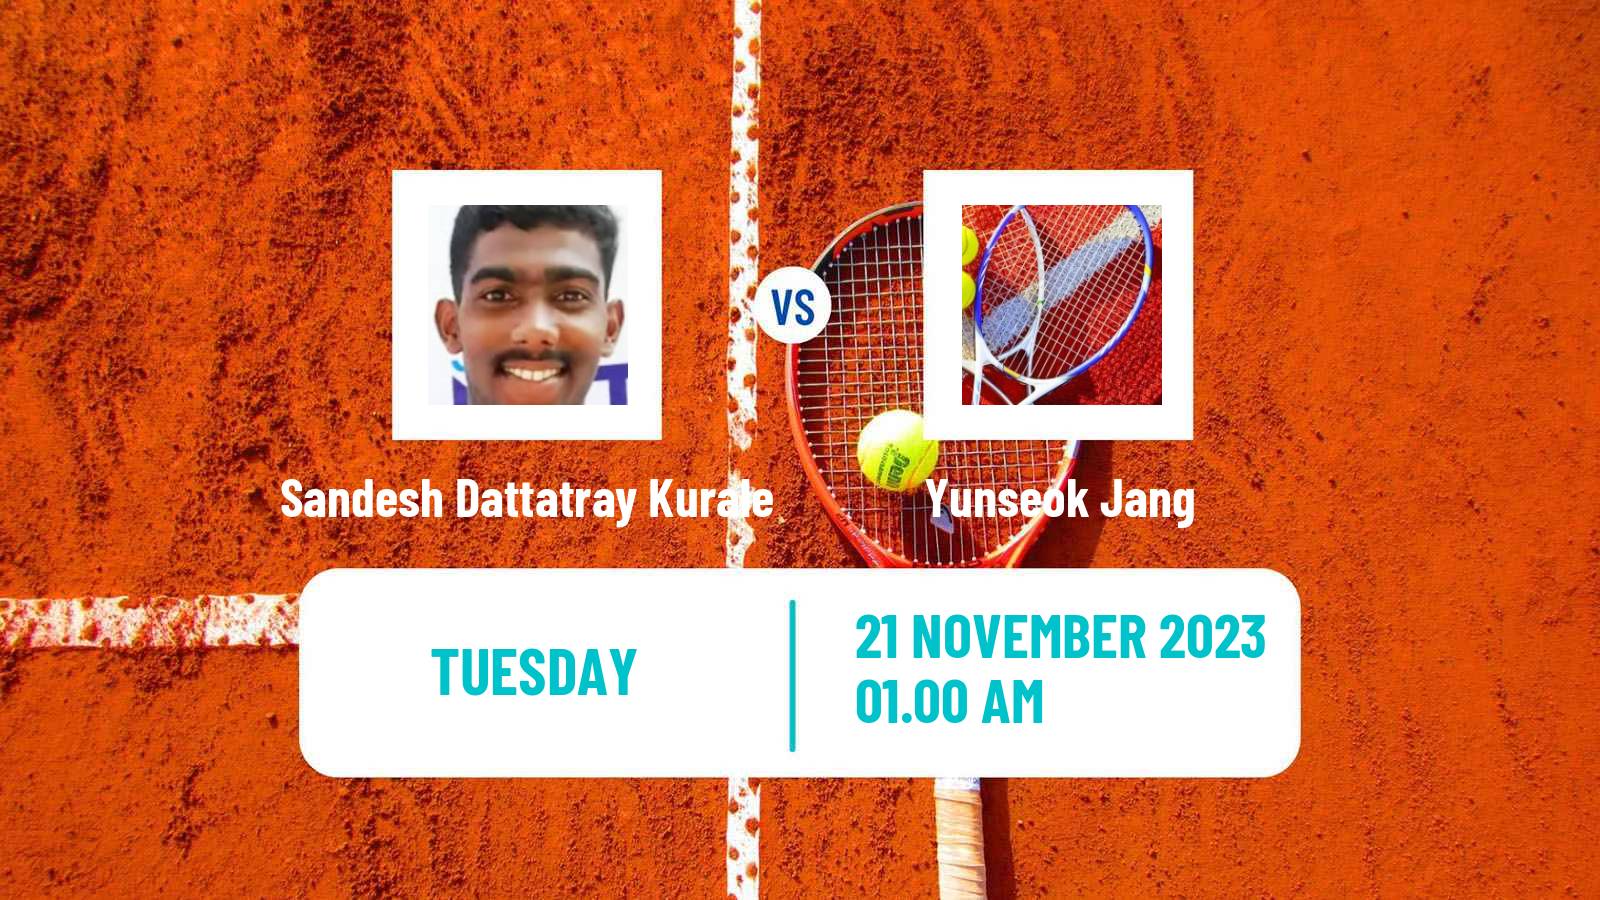 Tennis ITF M25 Mumbai Men 2023 Sandesh Dattatray Kurale - Yunseok Jang